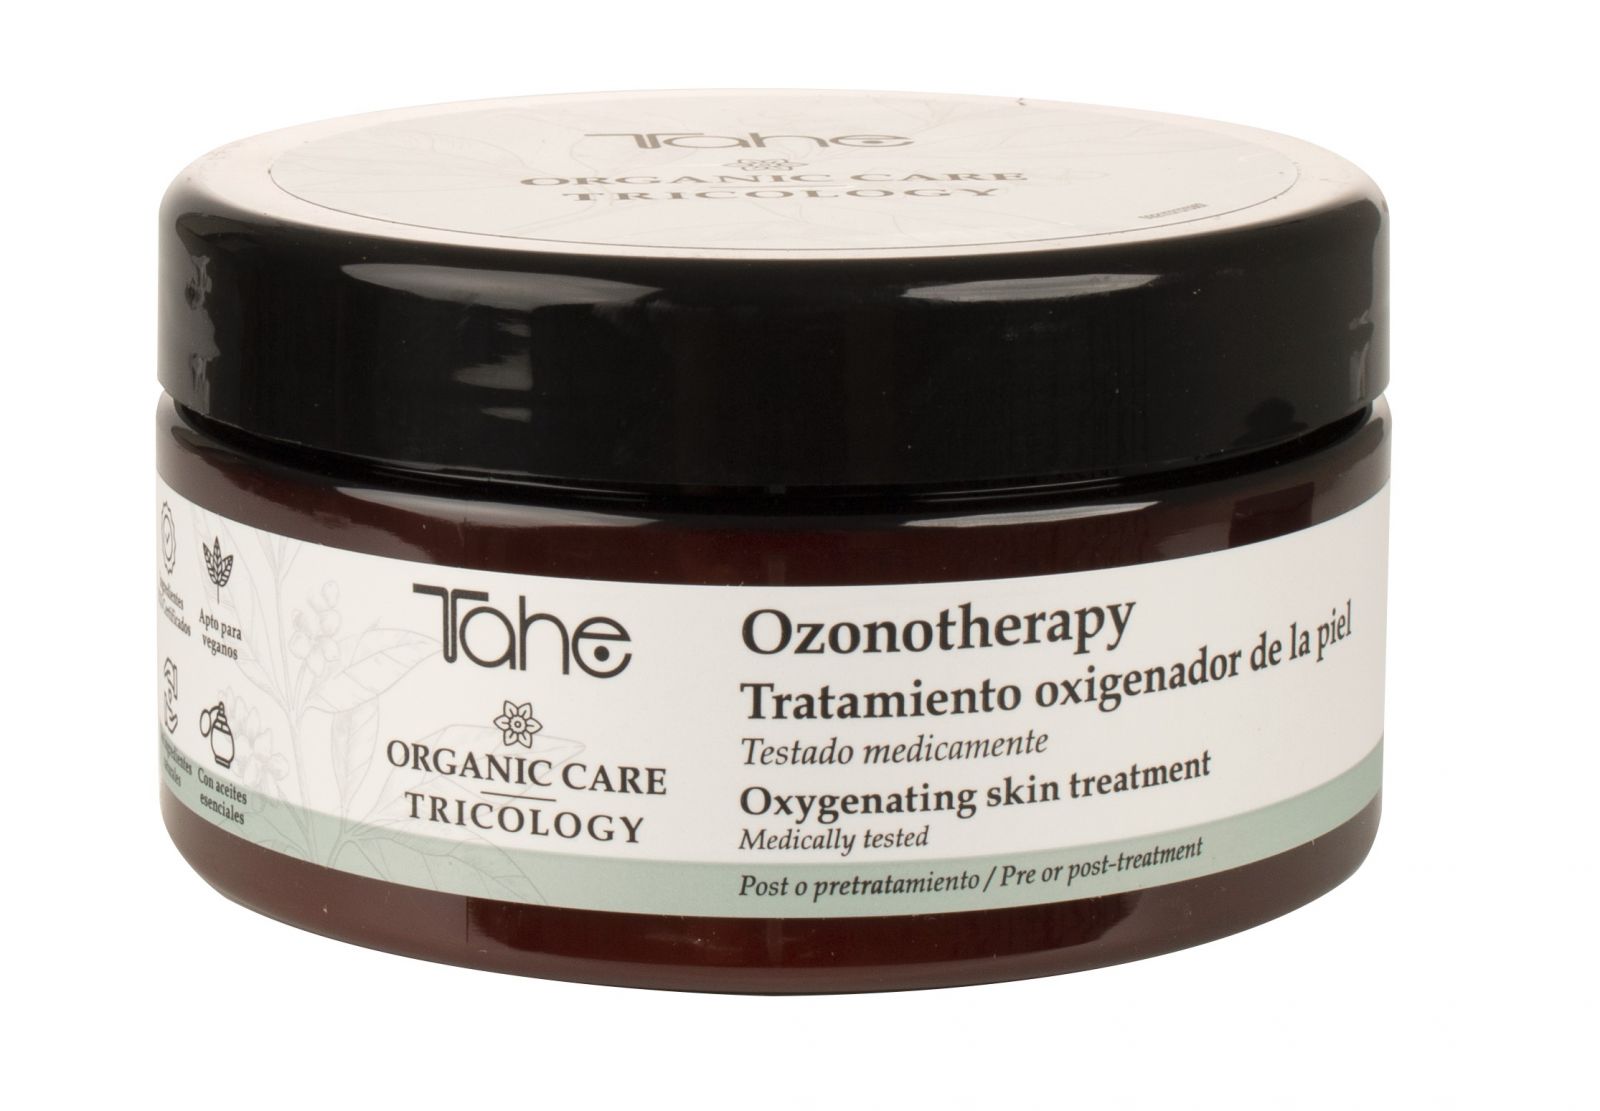 Tratamiento oxigenador de la piel (100 ml) TAHE